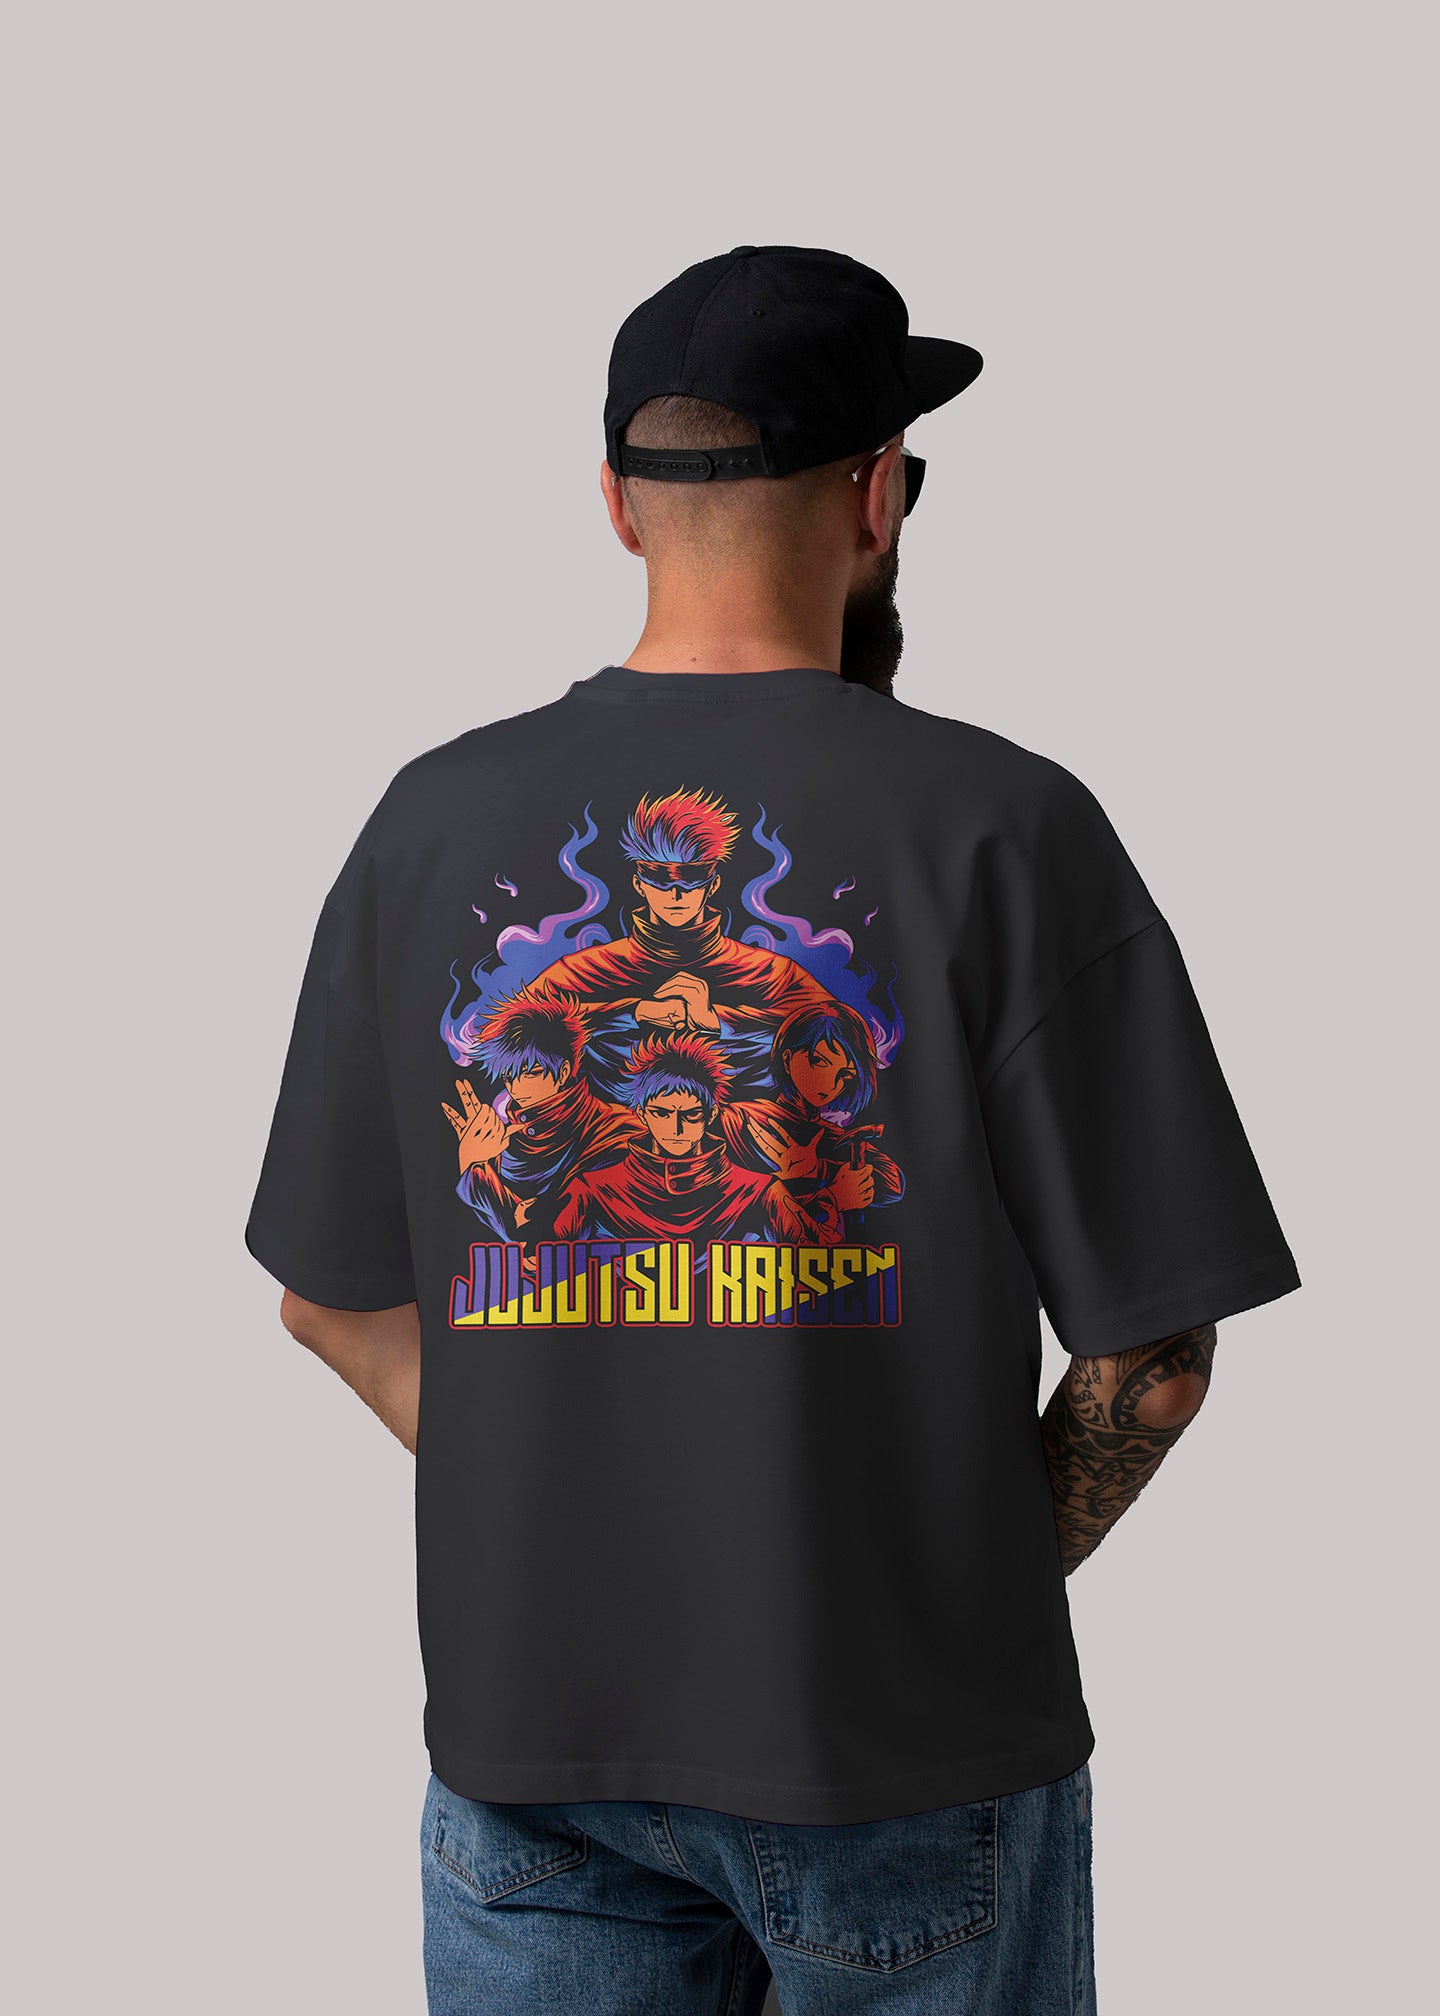 Jujutsu Kaisen Graphic Printed Oversized T-shirt